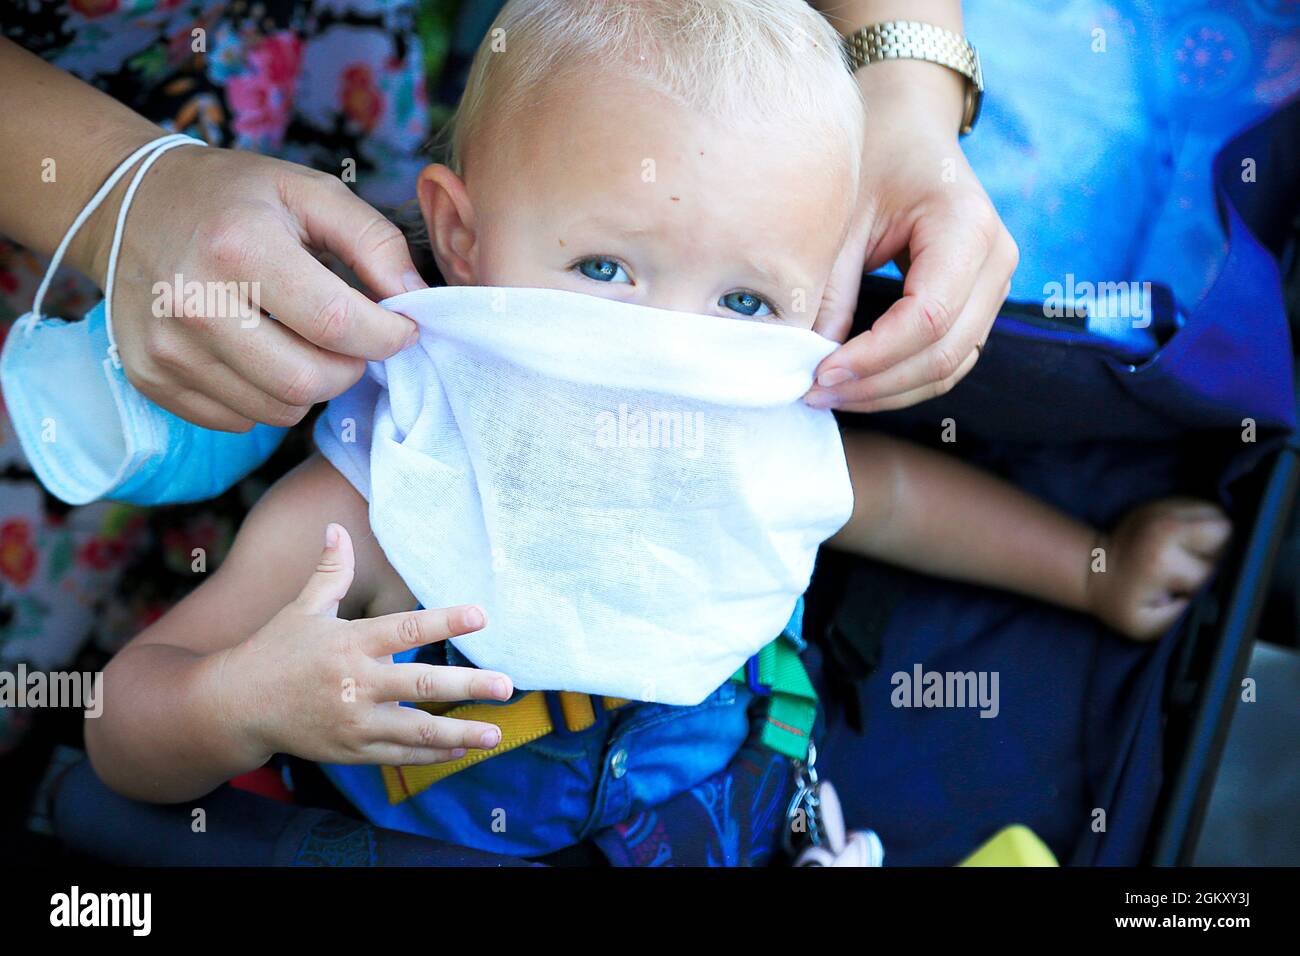 La mère met le foulard blanc comme musc protecteur sur le bébé blond à œil bleu. Portrait des enfants. Main caucasienne femelle avec masque médical bleu sur le poignet. Regarder Banque D'Images